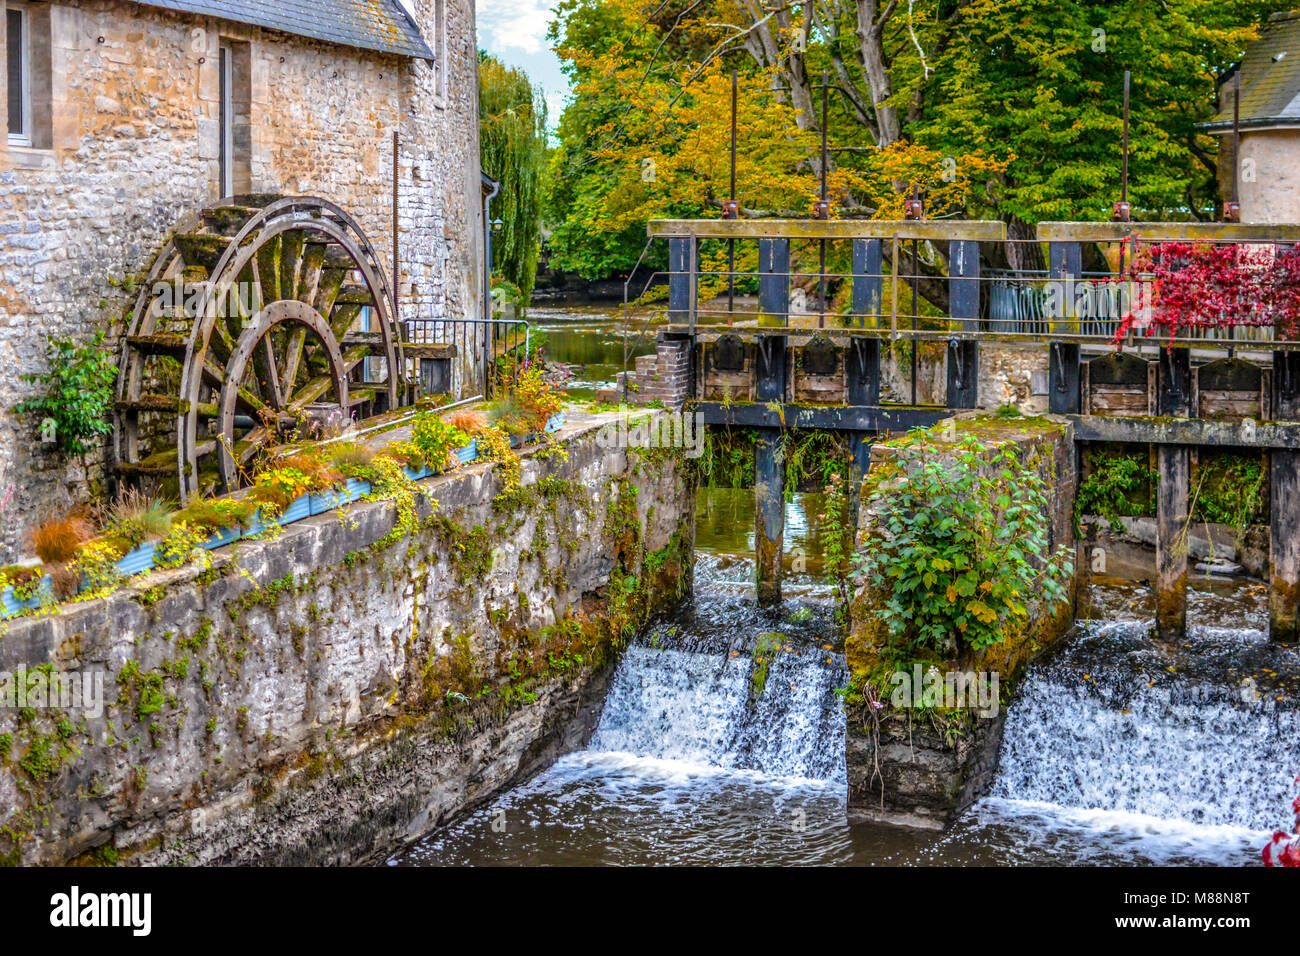 Le moulin à eau sur la rivière Aure dans la ville médiévale de Bayeux en Normandie de la France, avec des couleurs de début d'automne Banque D'Images